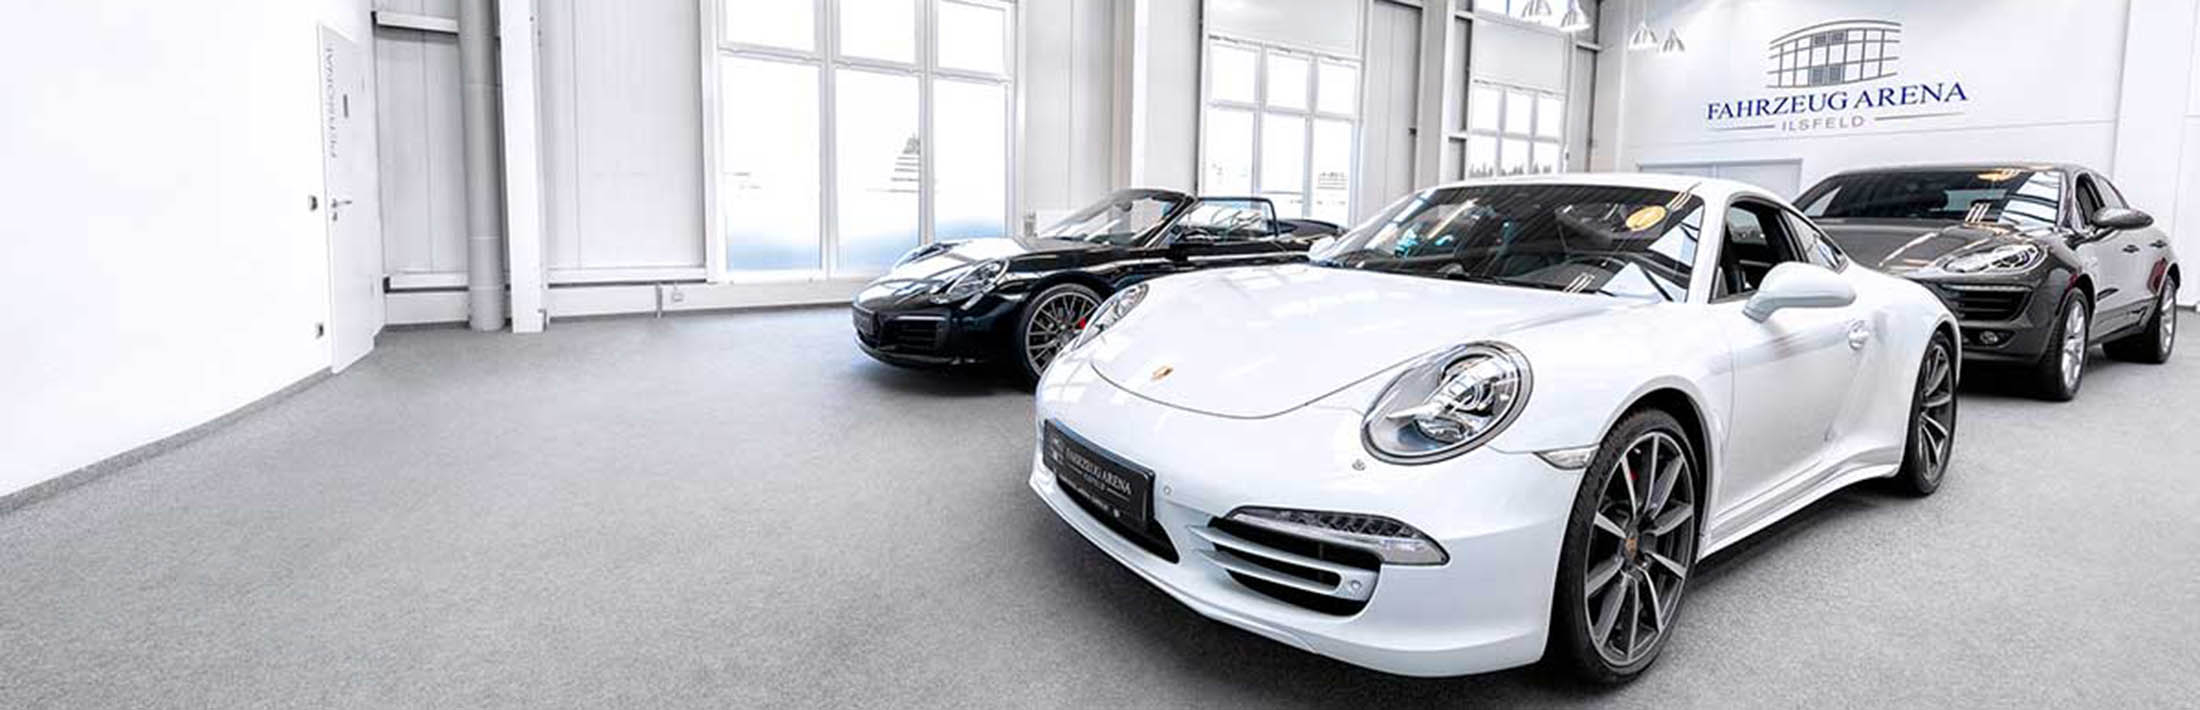 Fahrzeug Arena Ilsfeld GmbH Verschiedene Porsche Modelle in einem Ausstellungsraum